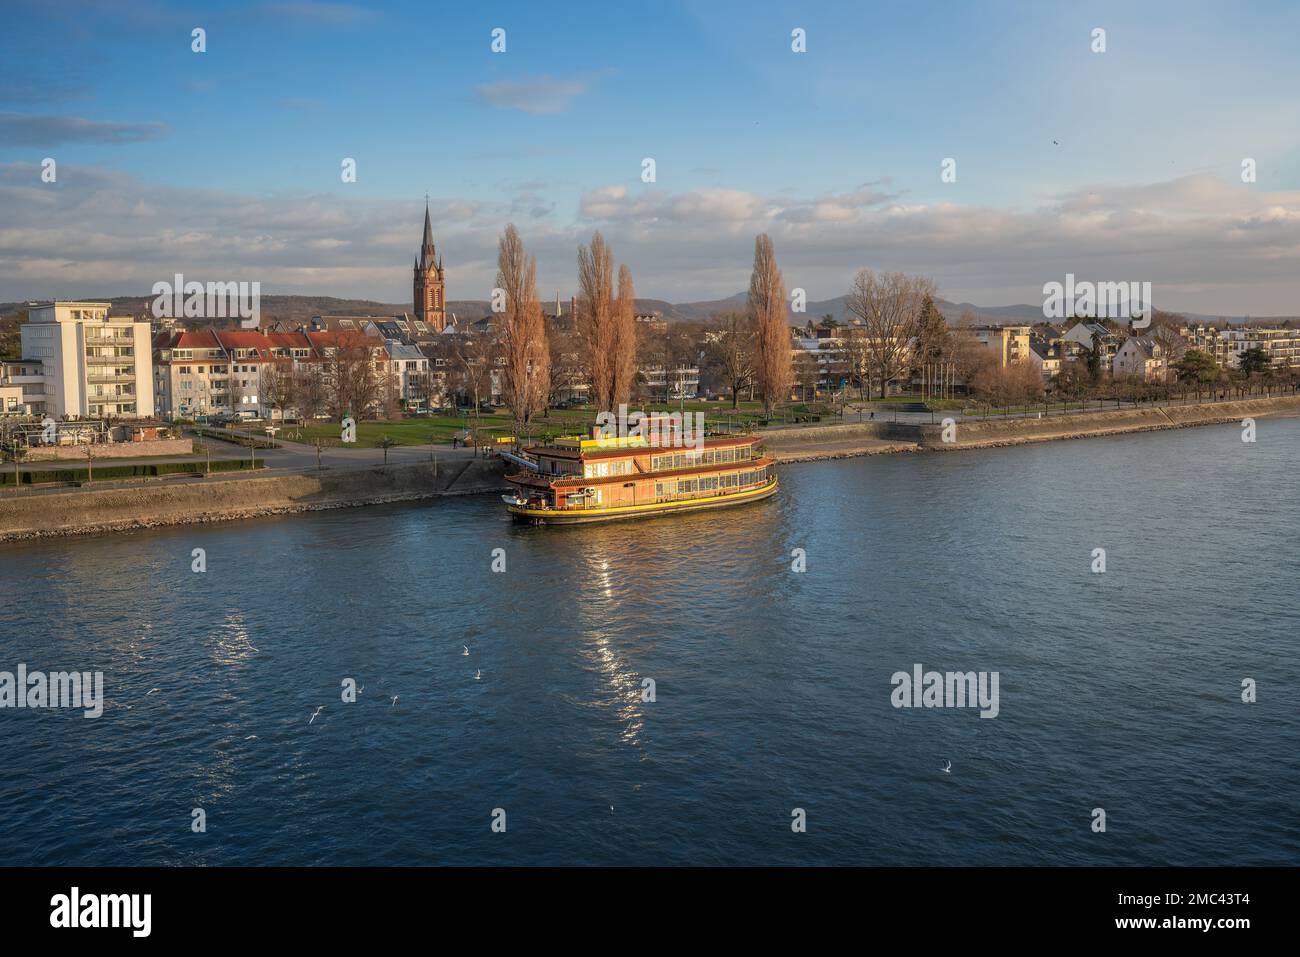 Skyline des Stadtteils Beuel und Rhein - Bonn, Deutschland Stockfoto